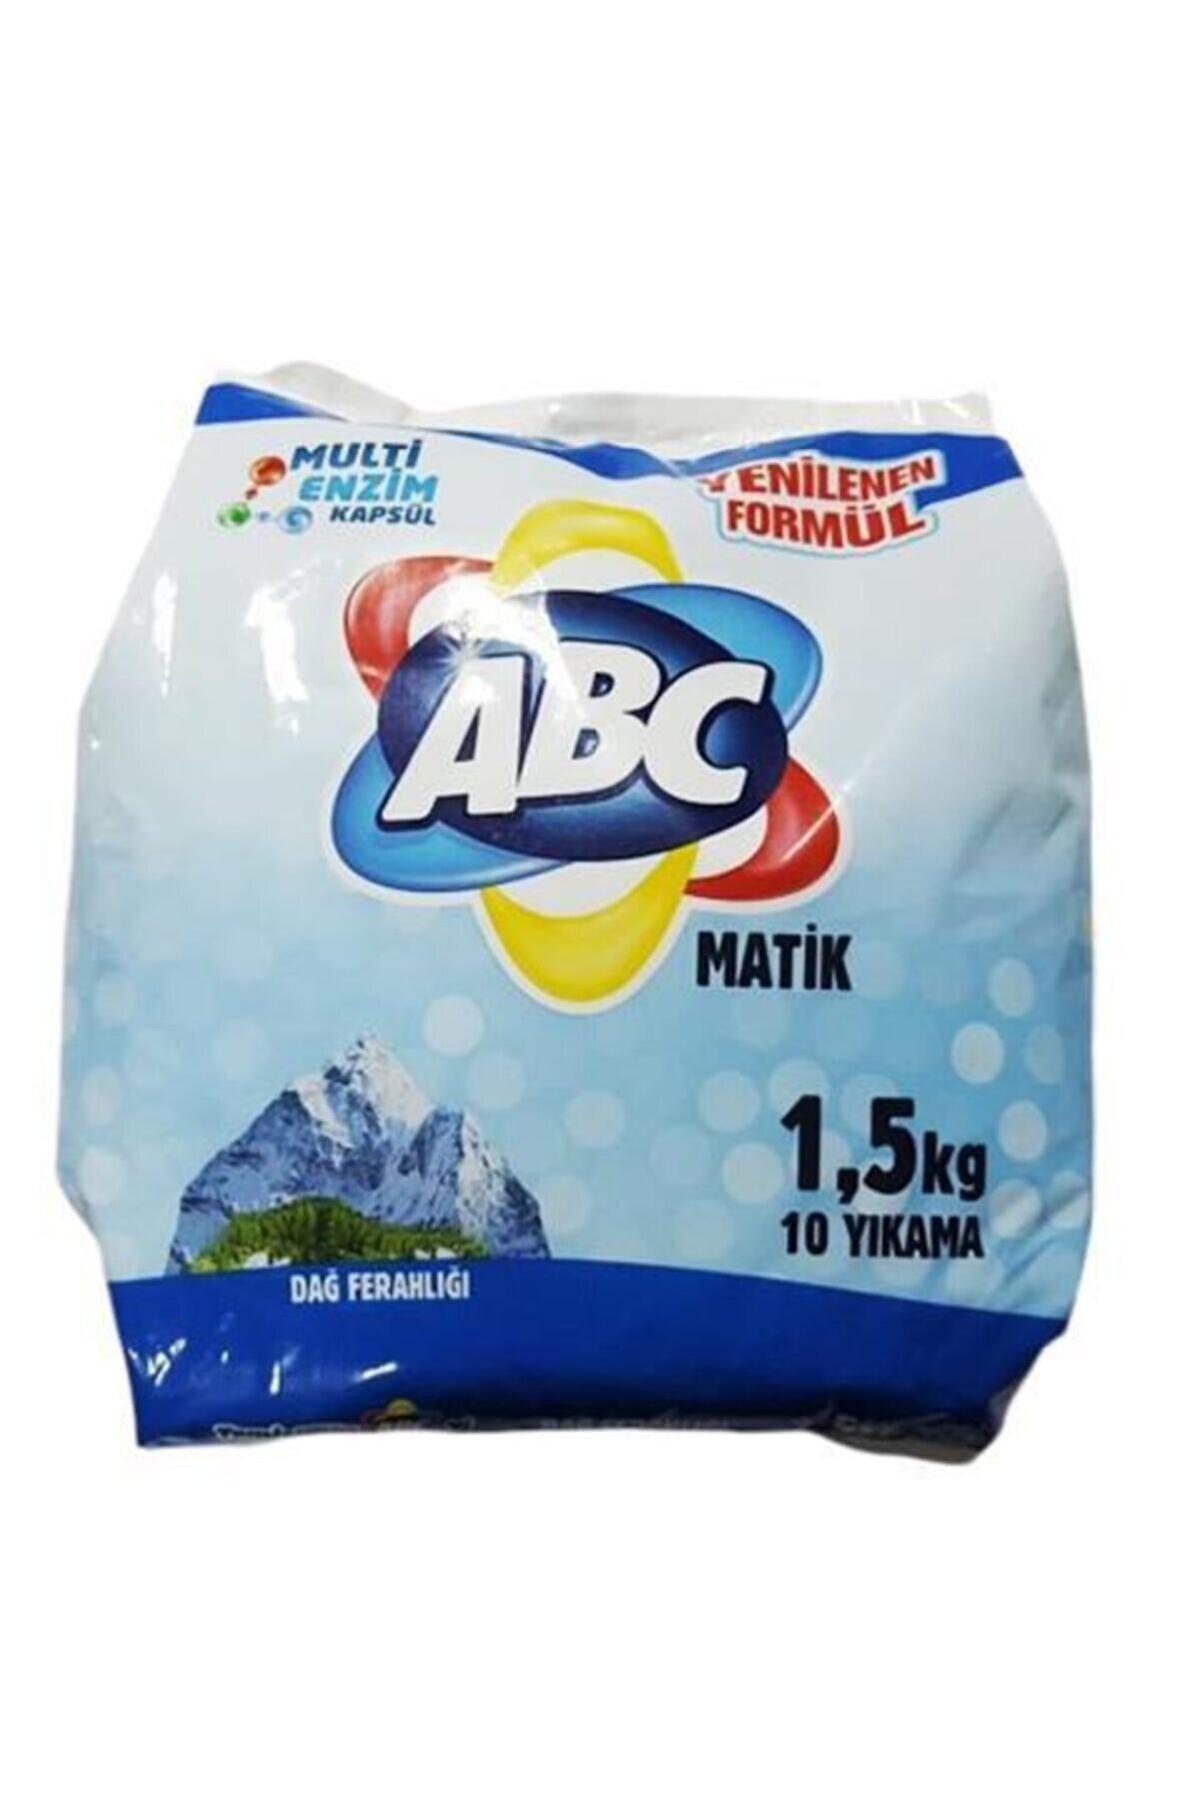 Abc Dağ Esintisi Matik Beyazlar İçin 10 Yıkama Toz Deterjan 1.5 kg